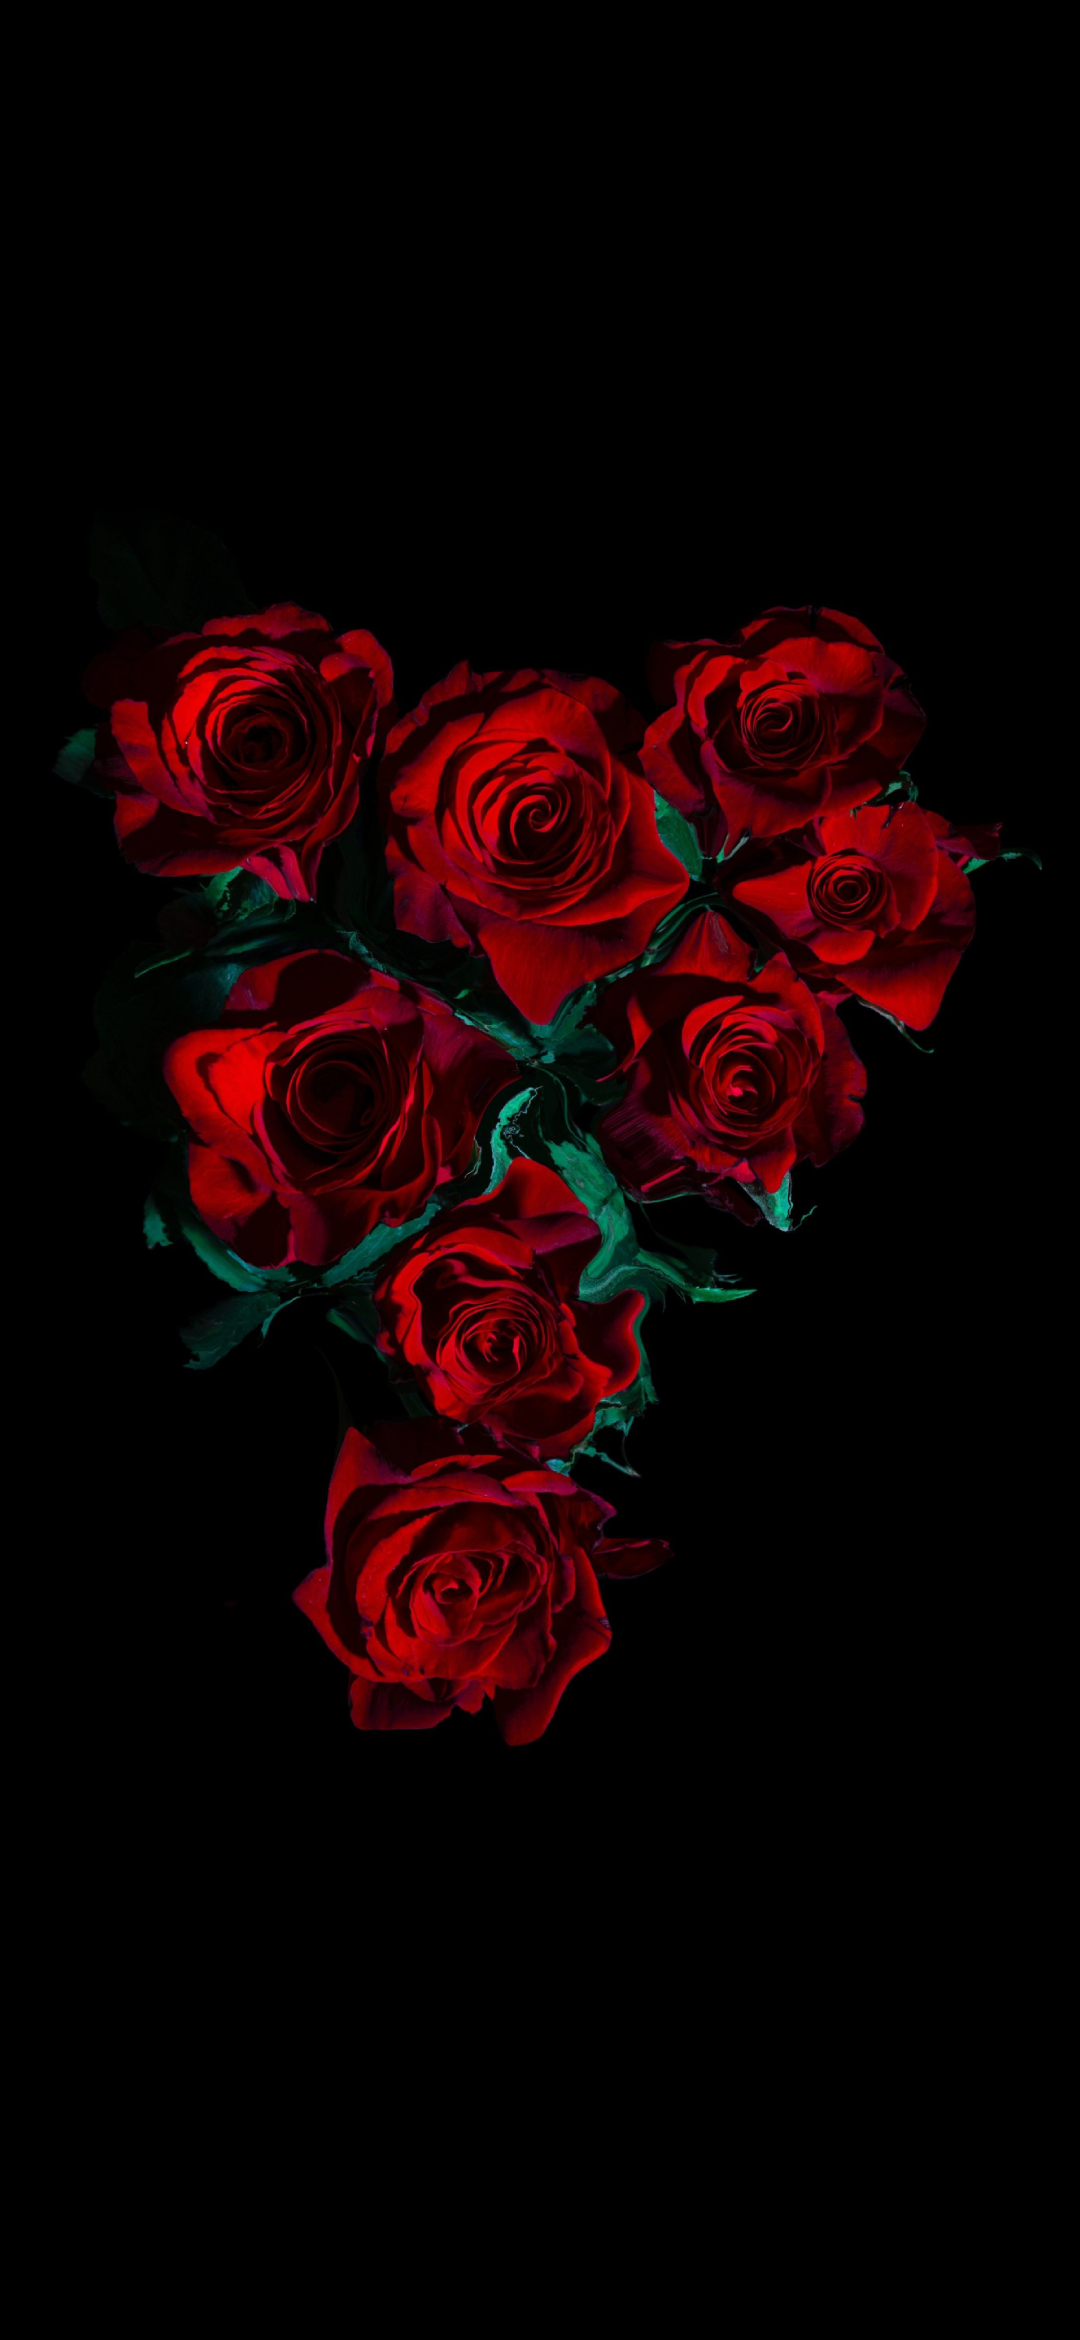 綺麗な薔薇の花 高画質 Aquos Zero5g Basic 壁紙 待ち受け スマラン